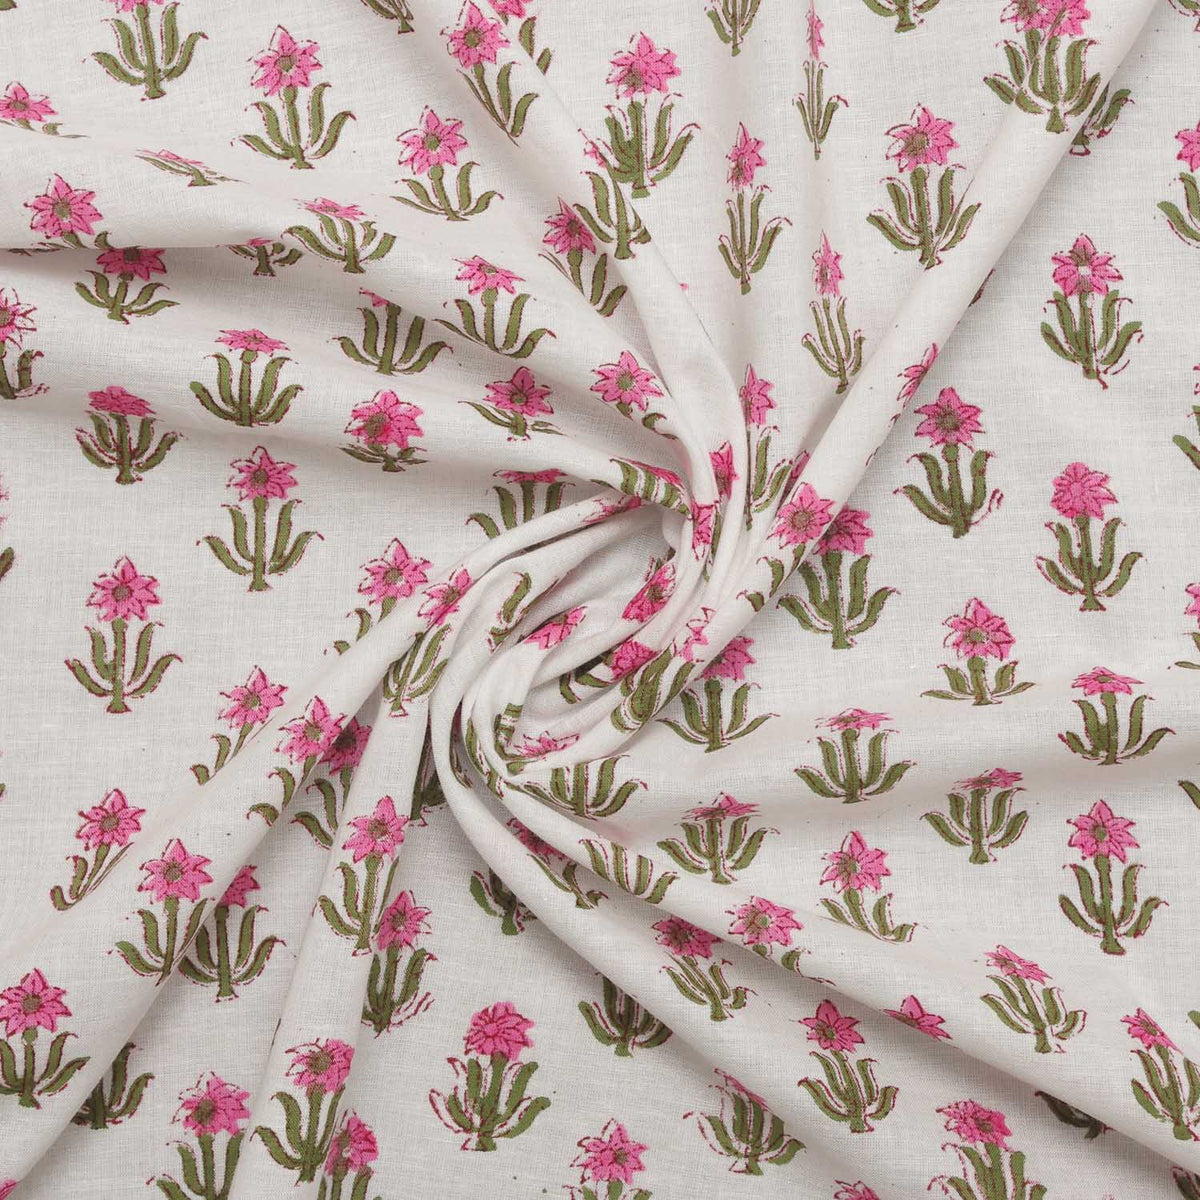 Indischer Handblock gedruckte kleine rosa Blumen Baumwollfrauen-Kleiderstoff-Design 207